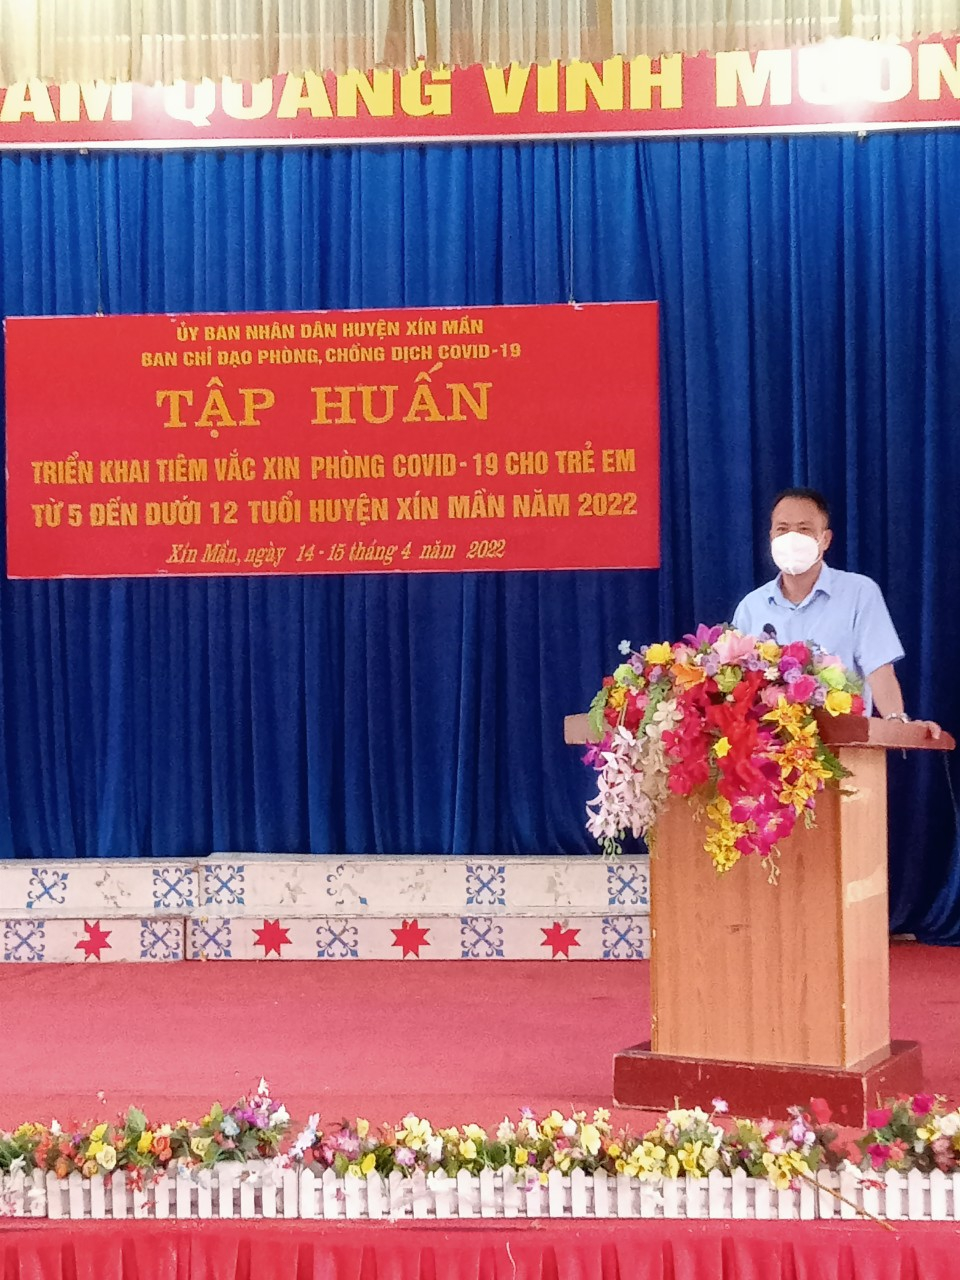 Đ/c Vương Thanh Nguyên,  Phó trưởng BCĐ phòng chống dịch Covid-19, Giám đốc Trung tâm Y tế huyện Xín Mần phát biểu khai mạc lớp tâp huấn